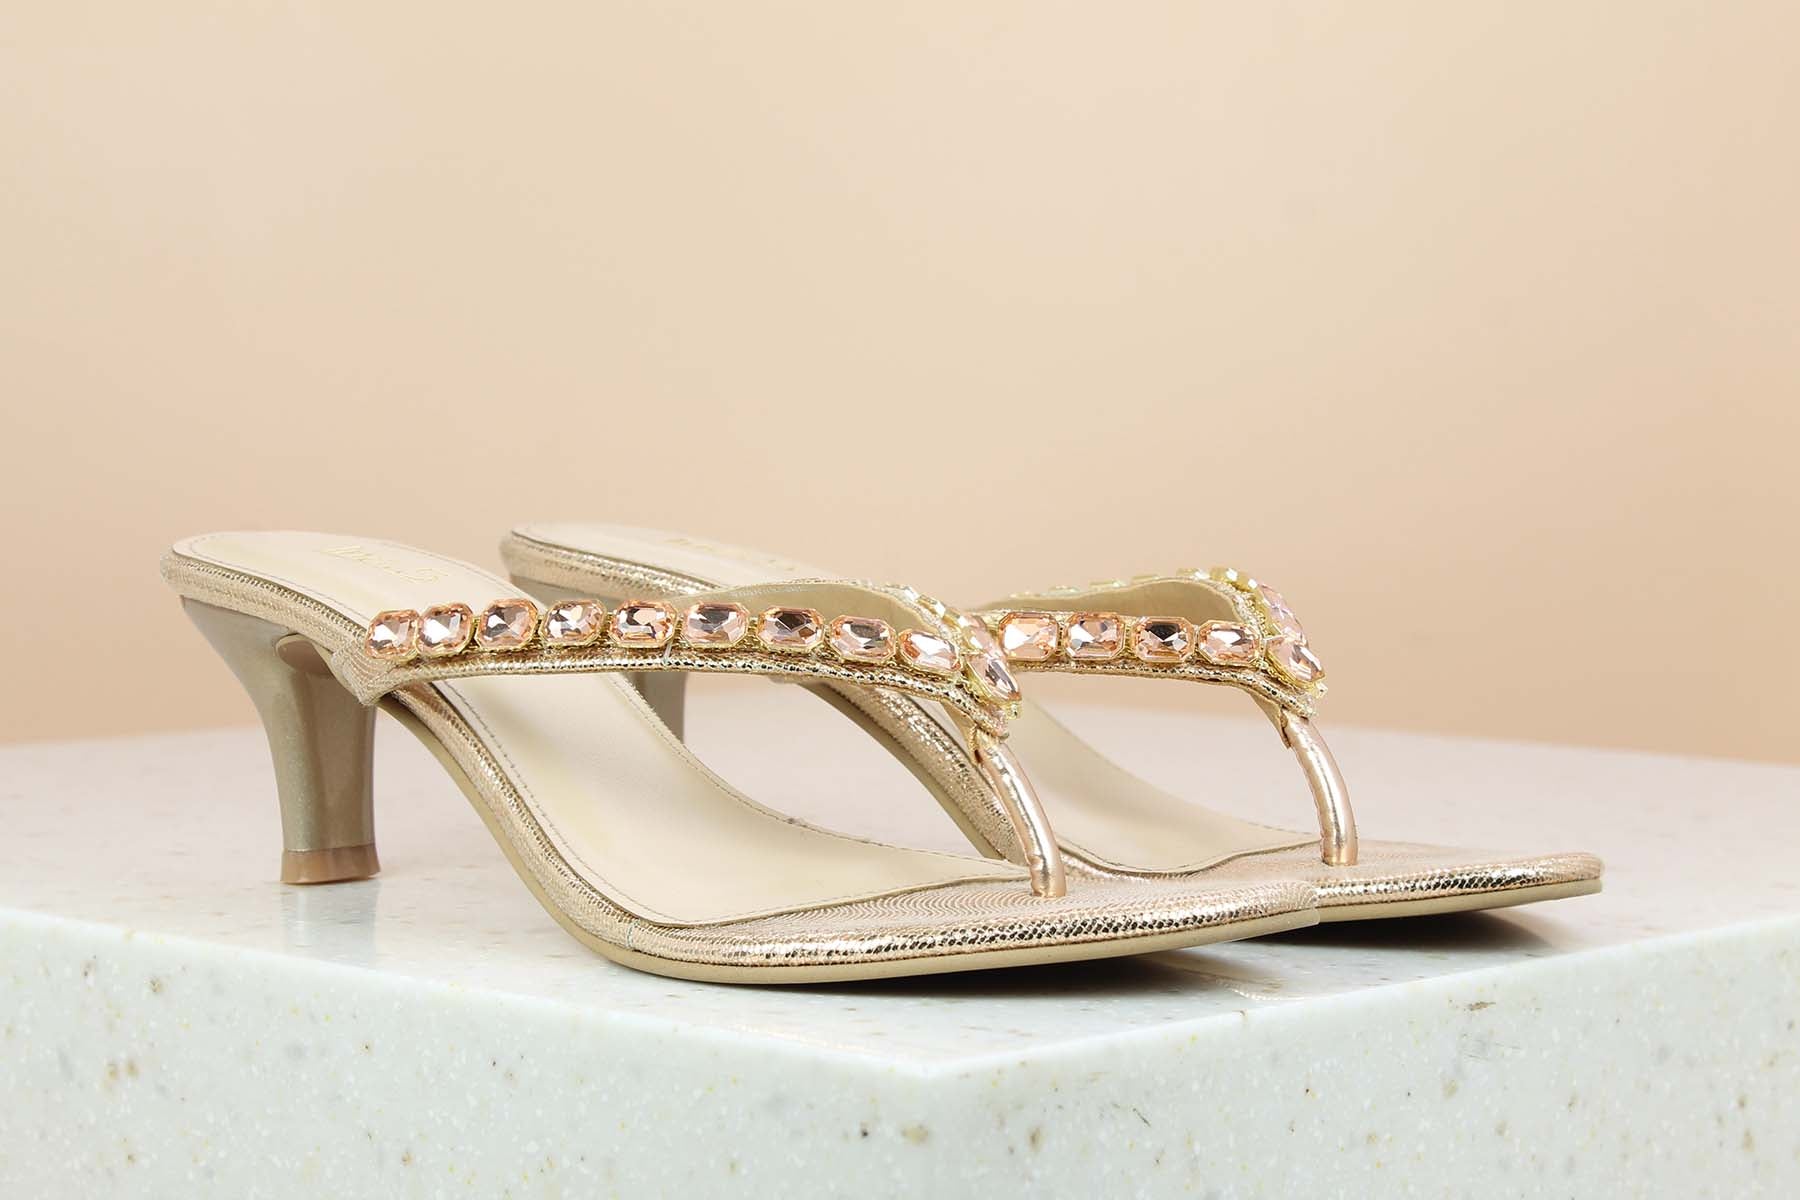 Buy Inc.5 Women Rose Gold Textured Block Heels at Amazon.in